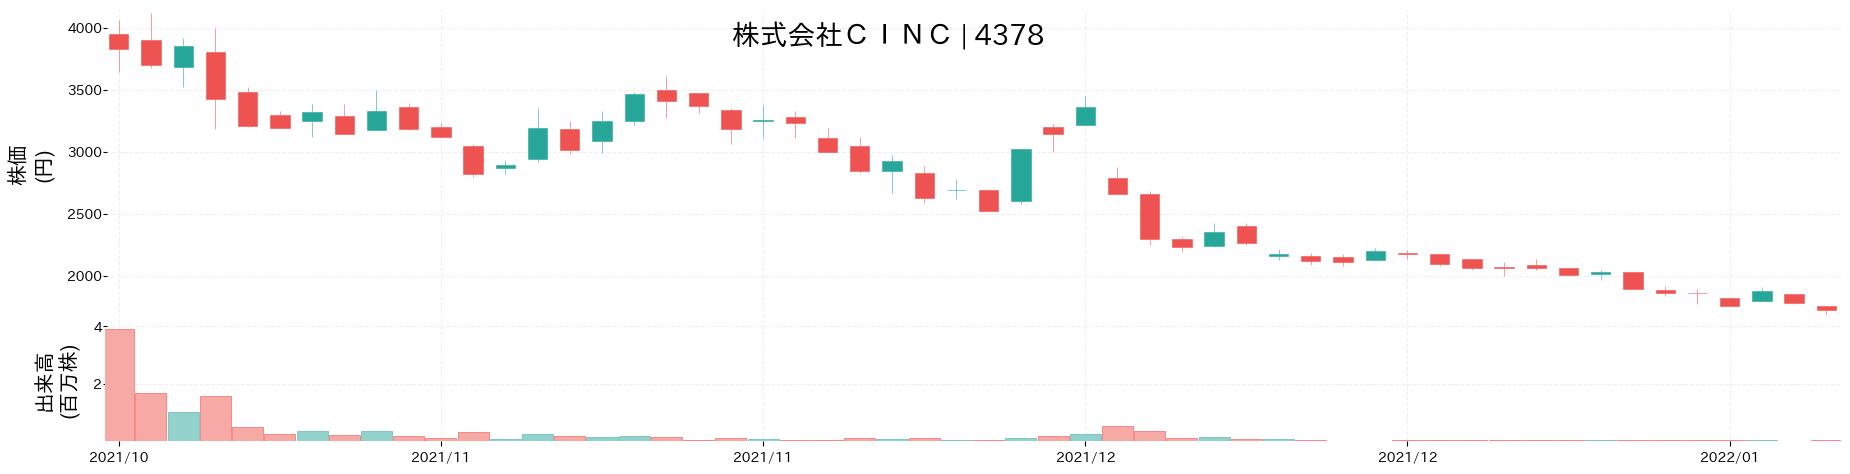 CINCの株価推移(2021)